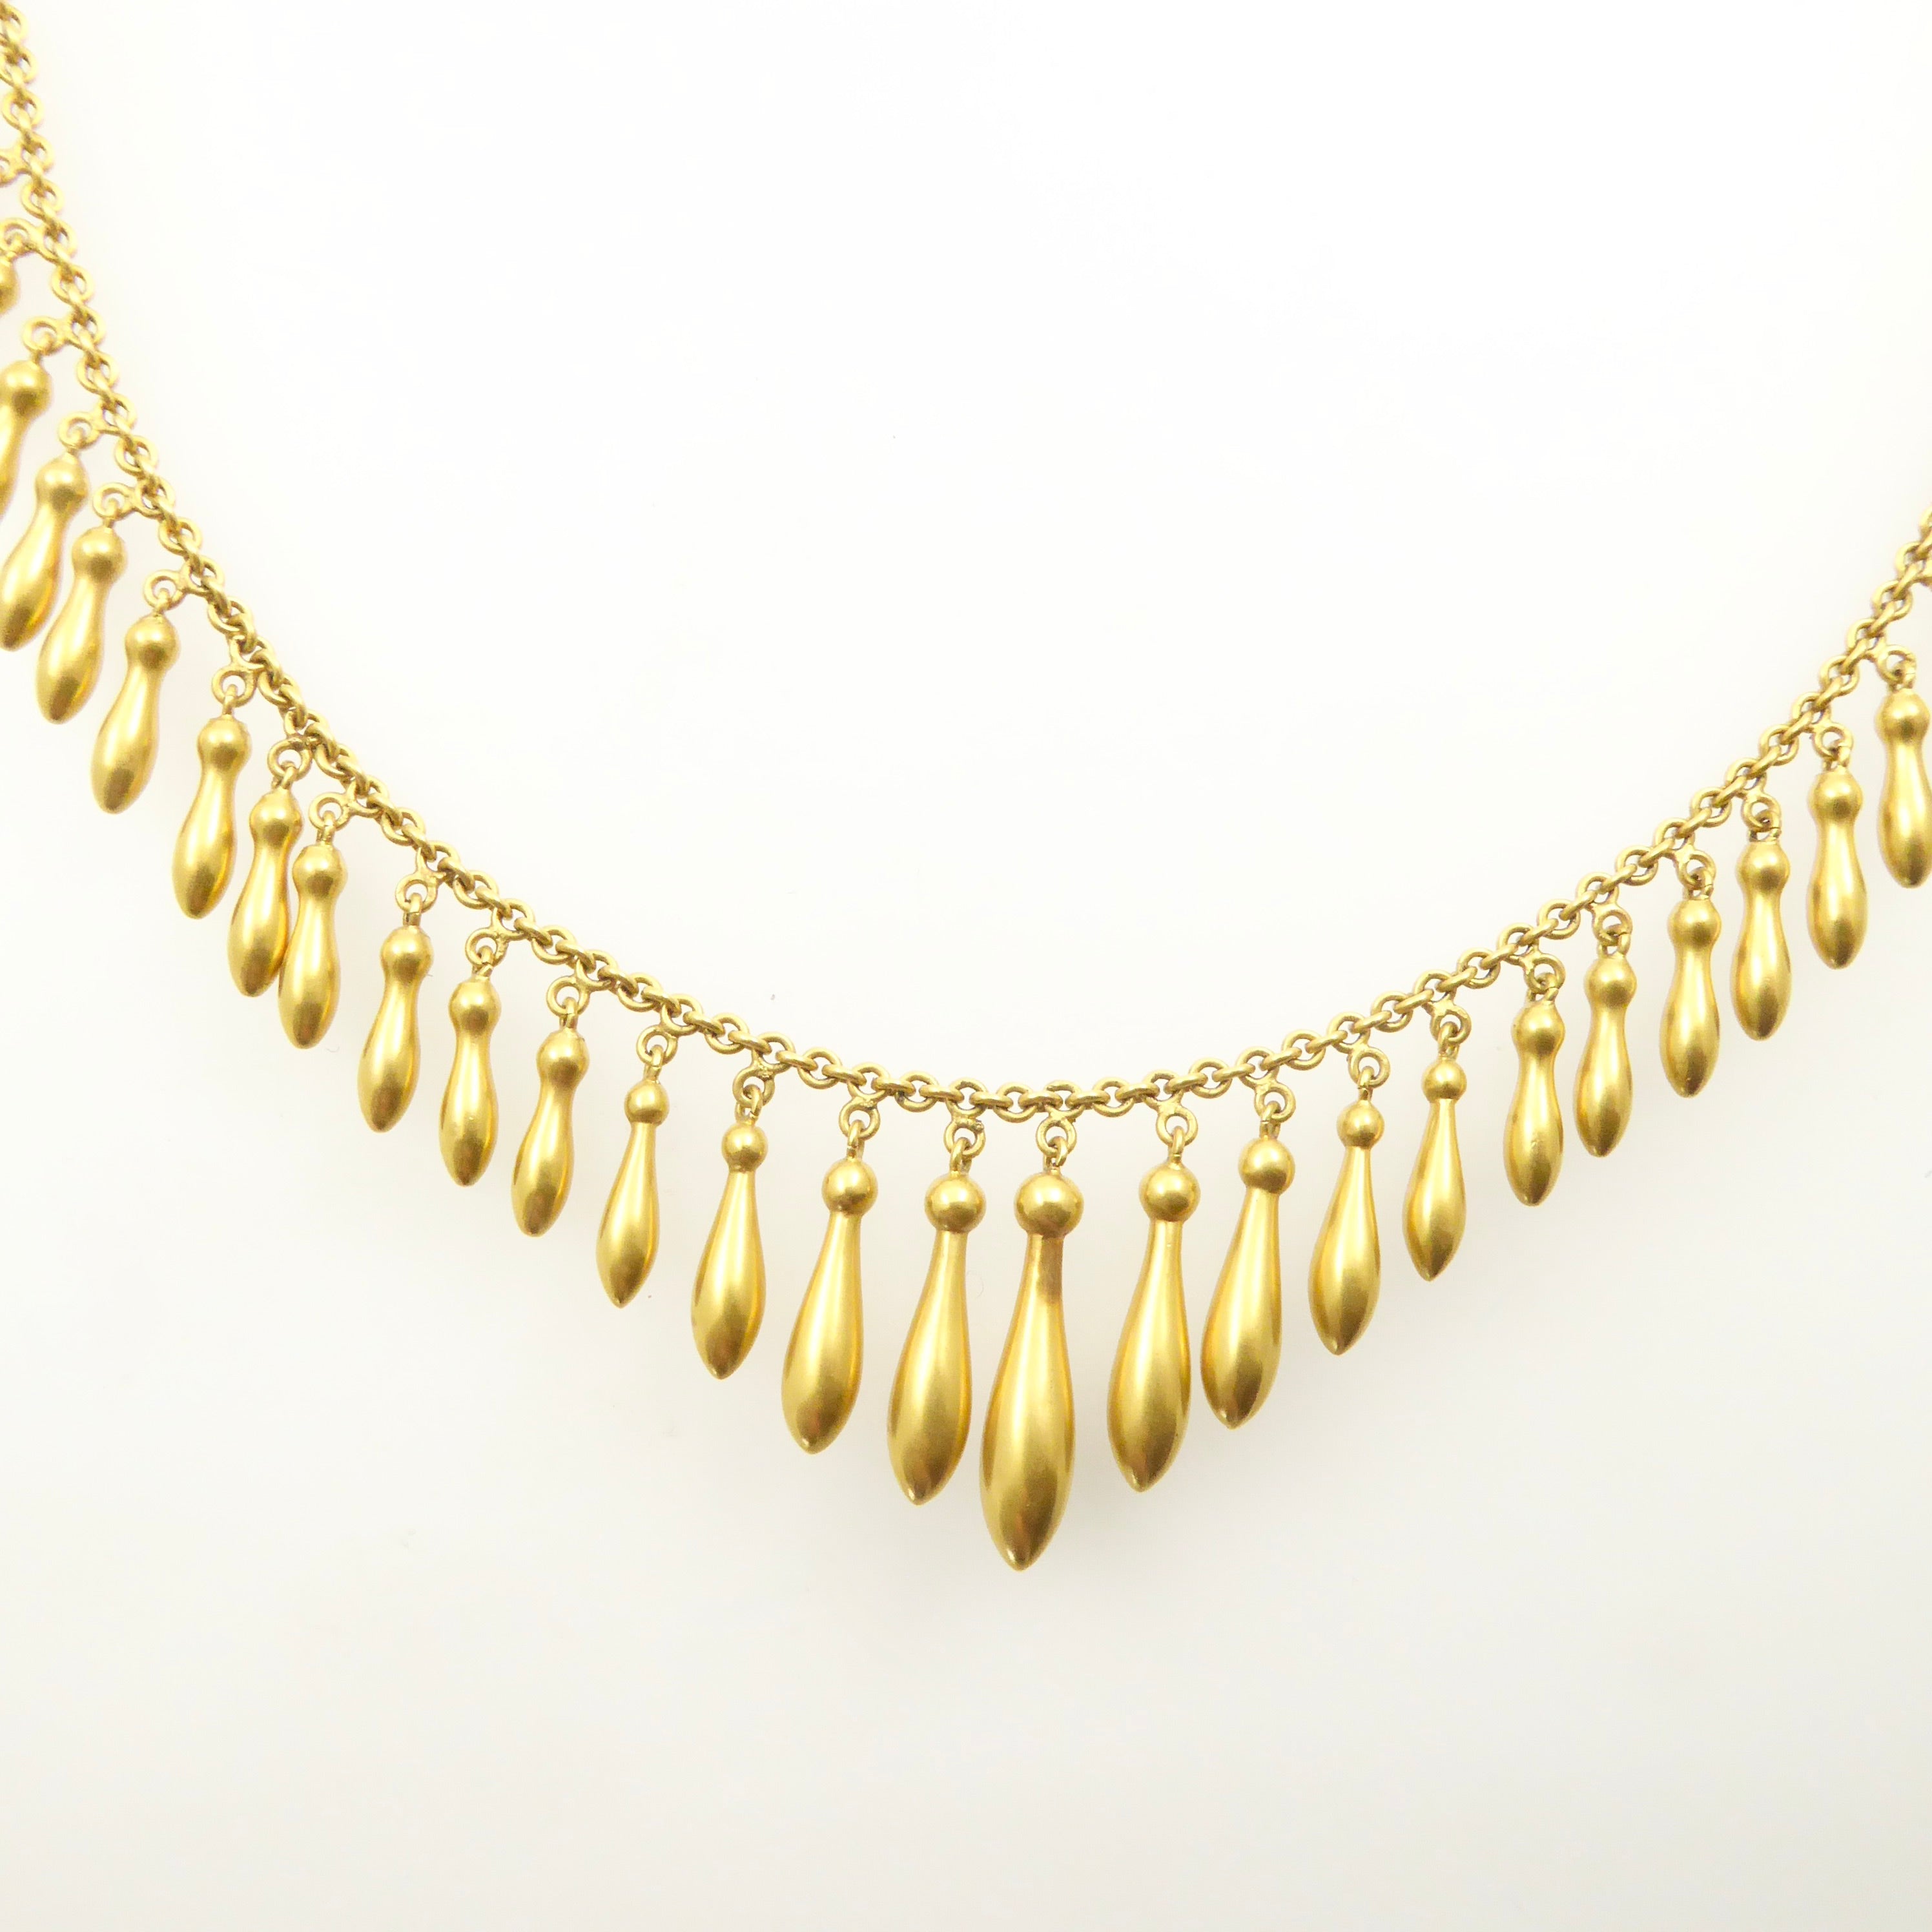 Victorian gold fringe necklace